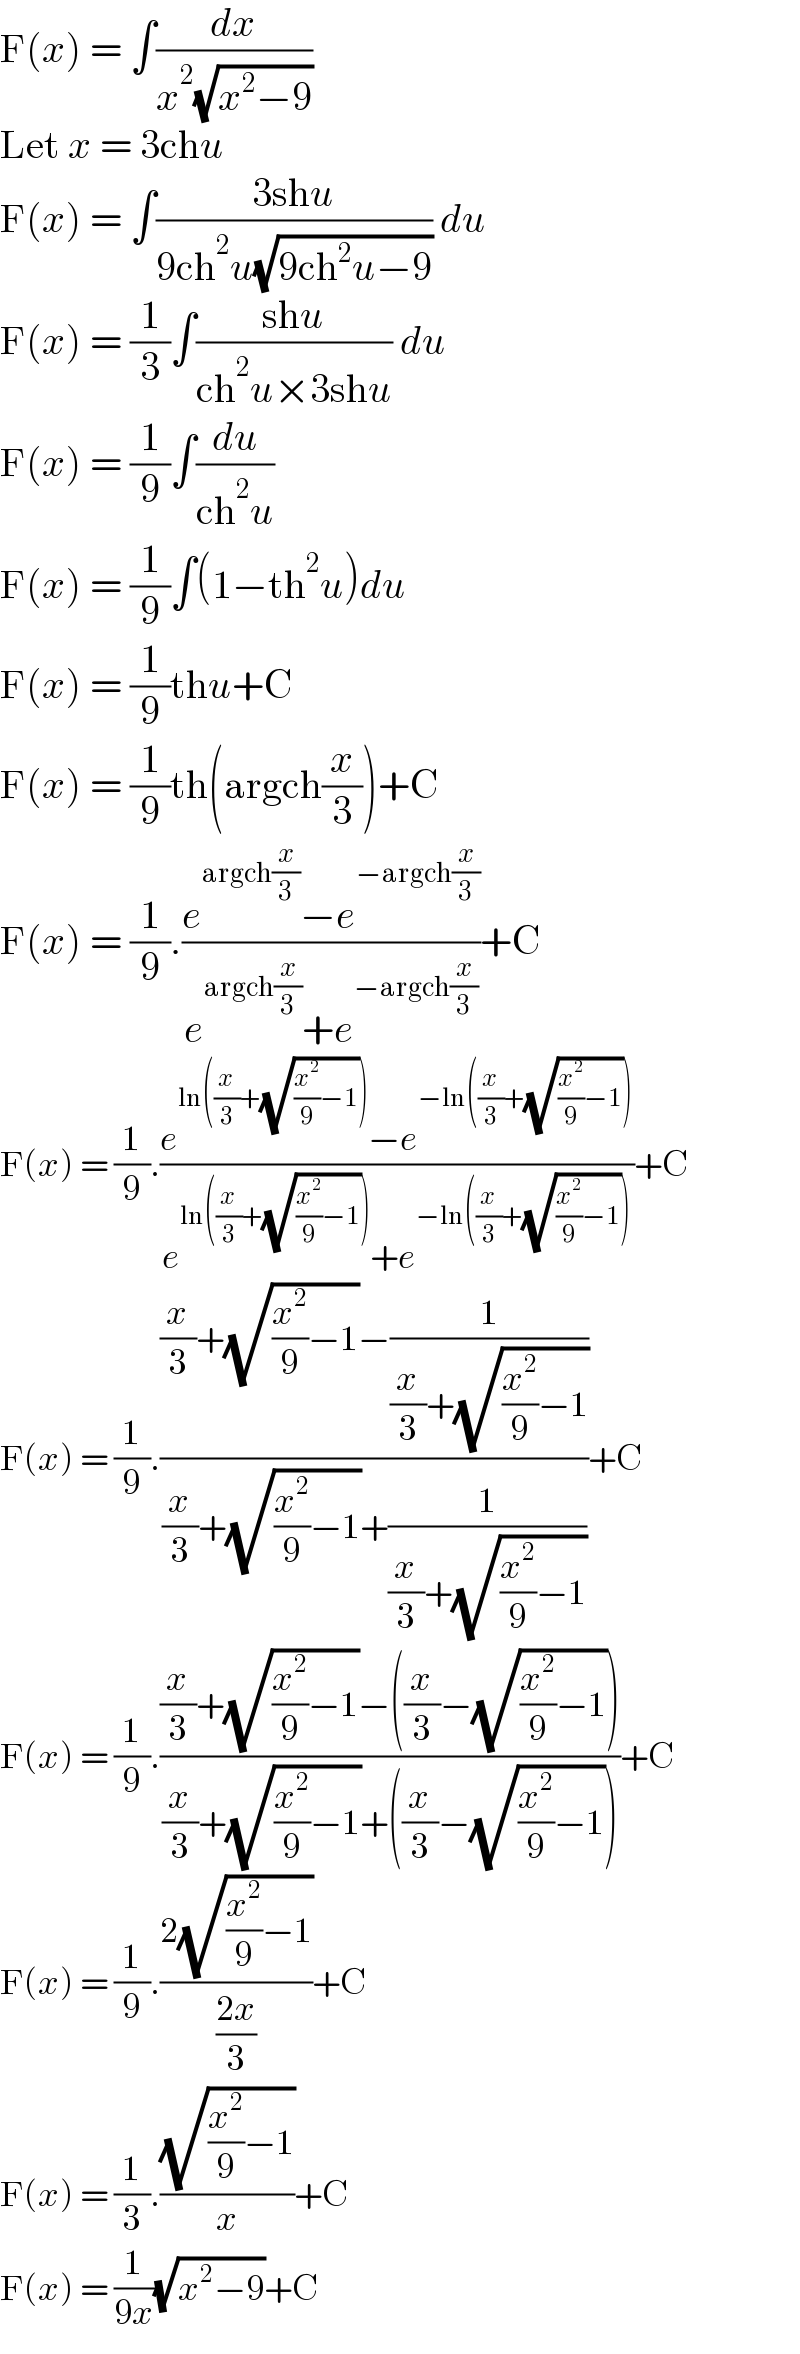 F(x) = ∫(dx/(x^2 (√(x^2 −9))))  Let x = 3chu  F(x) = ∫((3shu)/(9ch^2 u(√(9ch^2 u−9)))) du  F(x) = (1/3)∫((shu)/(ch^2 u×3shu)) du  F(x) = (1/9)∫(du/(ch^2 u))   F(x) = (1/9)∫(1−th^2 u)du  F(x) = (1/9)thu+C  F(x) = (1/9)th(argch(x/3))+C  F(x) = (1/9).((e^(argch(x/3)) −e^(−argch(x/3)) )/(e^(argch(x/3)) +e^(−argch(x/3)) ))+C  F(x) = (1/9).((e^(ln((x/3)+(√((x^2 /9)−1)))) −e^(−ln((x/3)+(√((x^2 /9)−1)))) )/(e^(ln((x/3)+(√((x^2 /9)−1)))) +e^(−ln((x/3)+(√((x^2 /9)−1)))) ))+C  F(x) = (1/9).(((x/3)+(√((x^2 /9)−1))−(1/((x/3)+(√((x^2 /9)−1)))))/((x/3)+(√((x^2 /9)−1))+(1/((x/3)+(√((x^2 /9)−1))))))+C  F(x) = (1/9).(((x/3)+(√((x^2 /9)−1))−((x/3)−(√((x^2 /9)−1))))/((x/3)+(√((x^2 /9)−1))+((x/3)−(√((x^2 /9)−1)))))+C  F(x) = (1/9).((2(√((x^2 /9)−1)))/((2x)/3))+C  F(x) = (1/3).((√((x^2 /9)−1))/x)+C  F(x) = (1/(9x))(√(x^2 −9))+C  